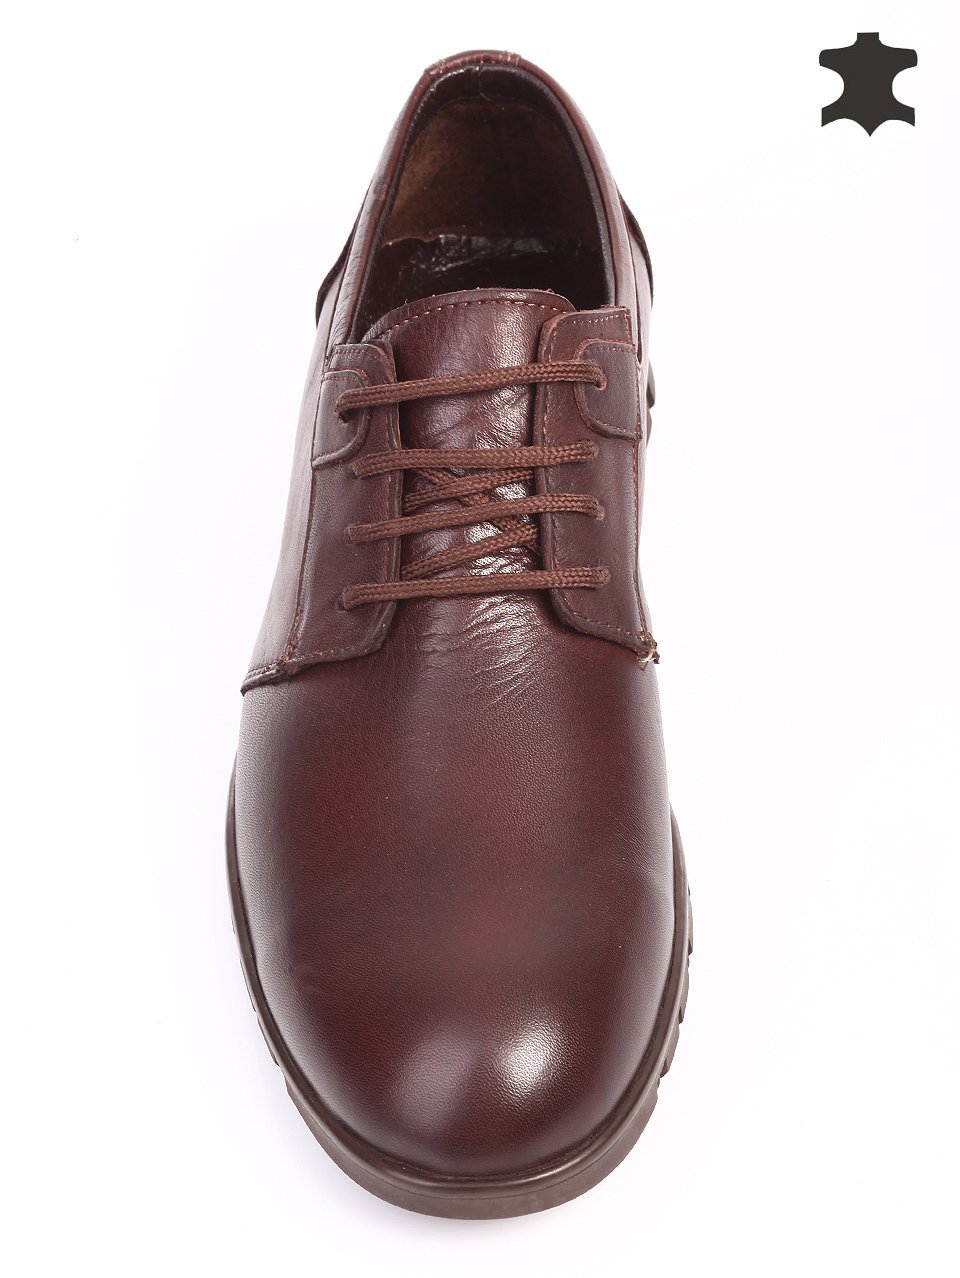 Спортно-елегантни мъжки обувки от естествена кожа 7AT-15826 brown